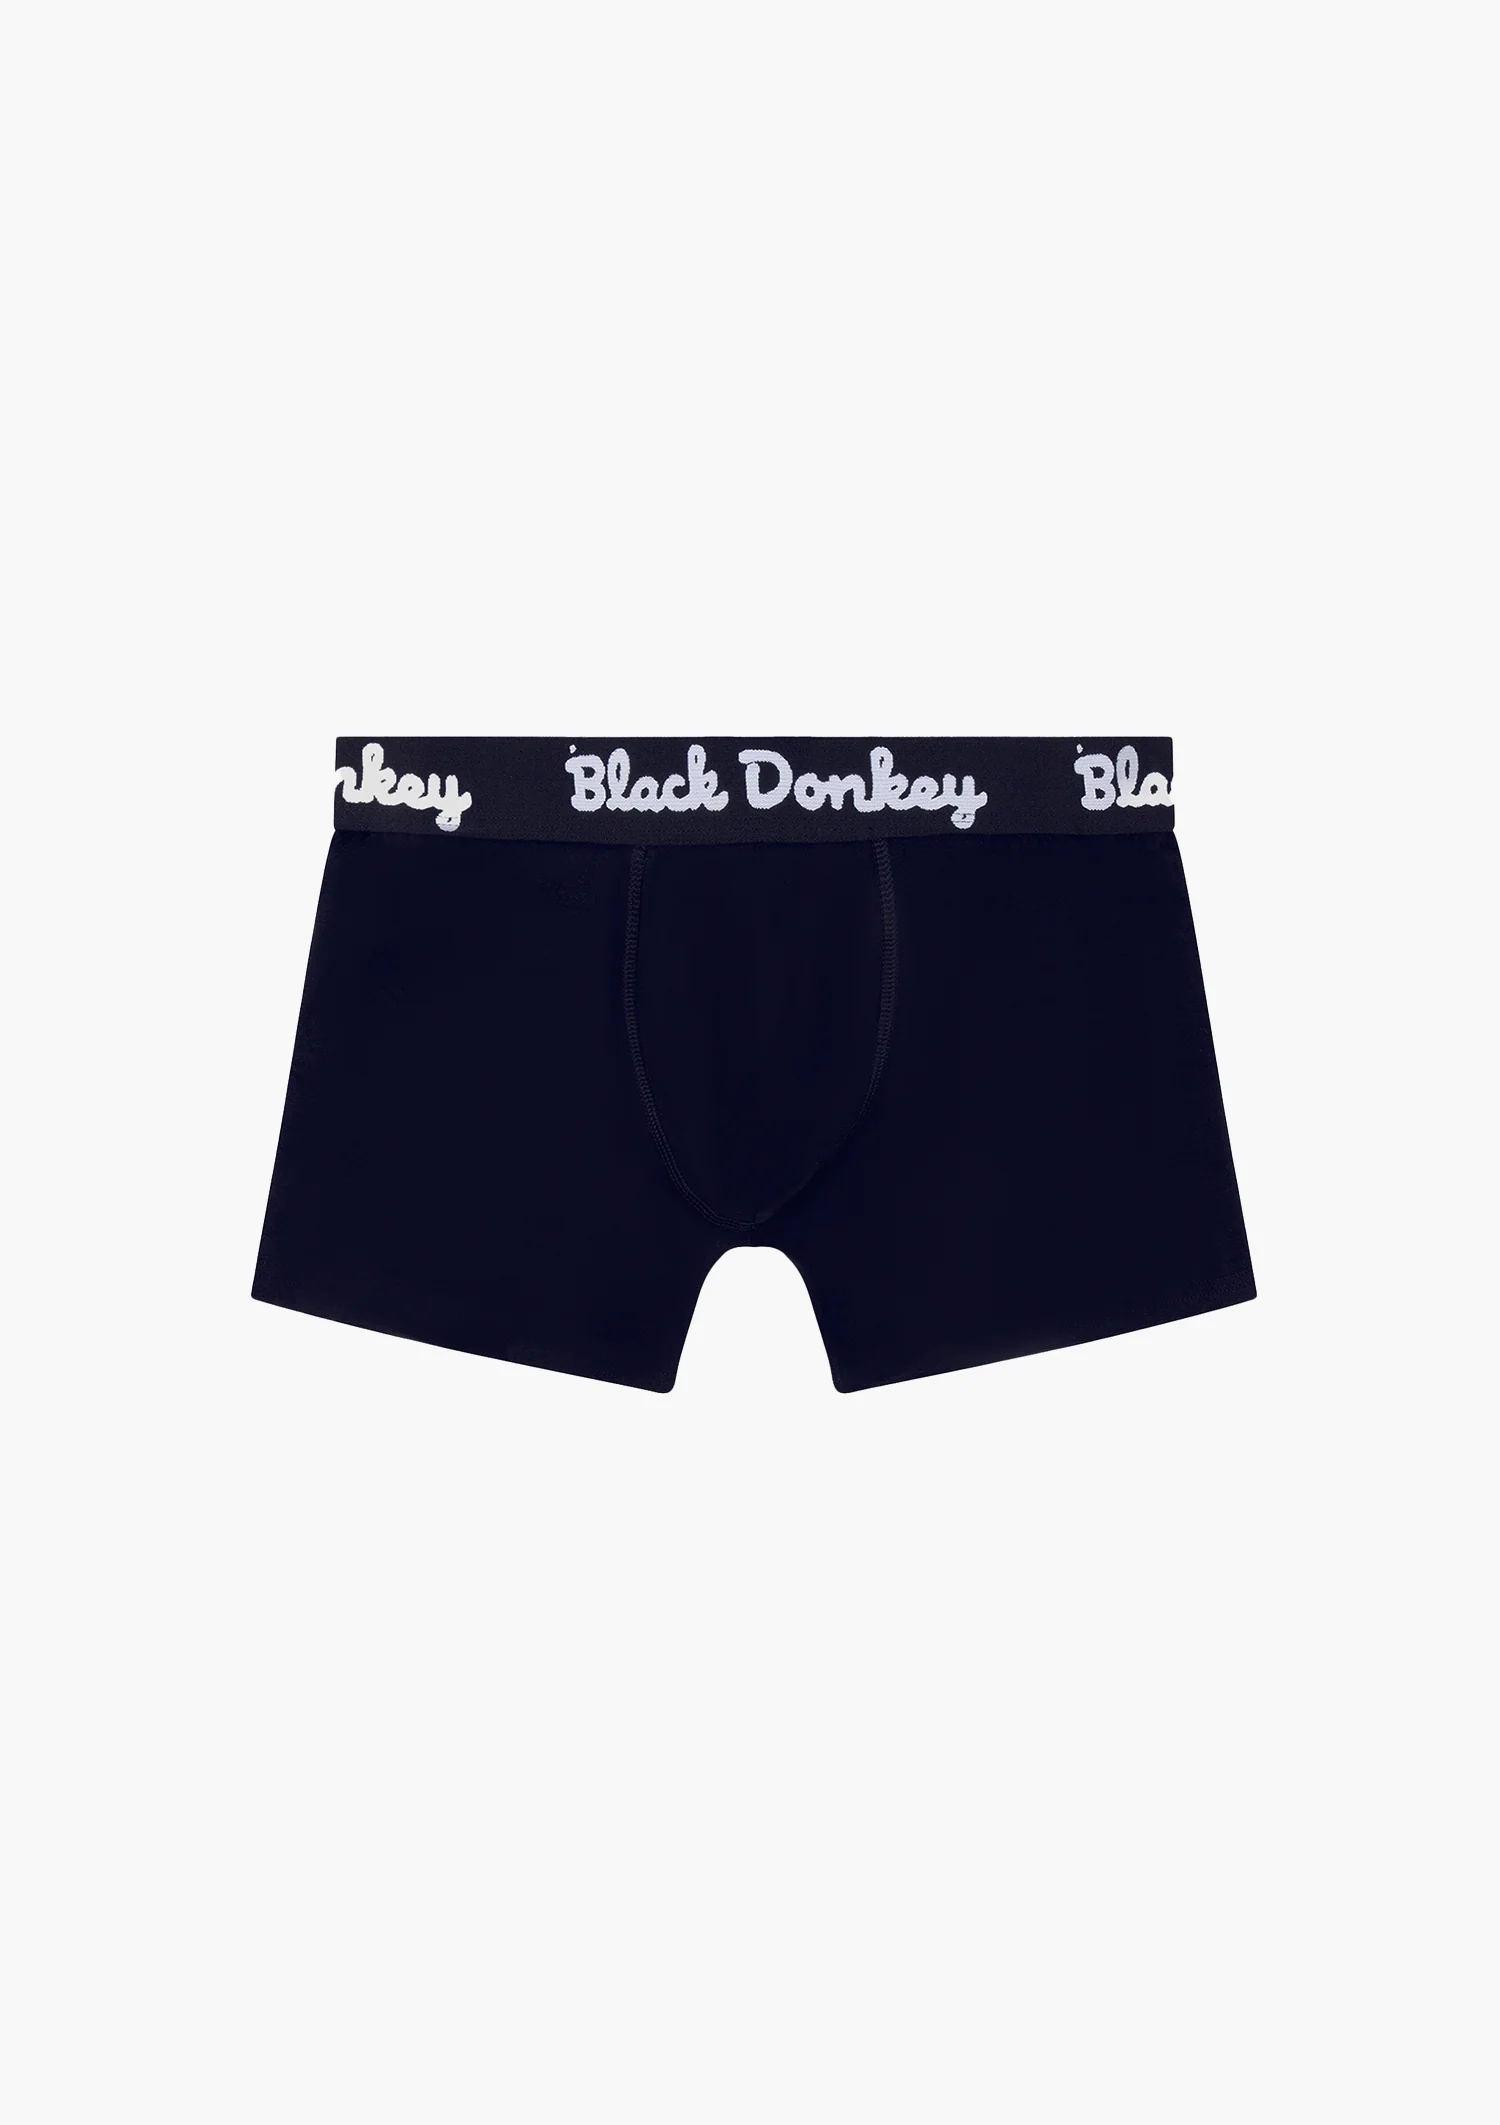 Afbeelding van Black Donkey Men boxer 1-pack i black/white